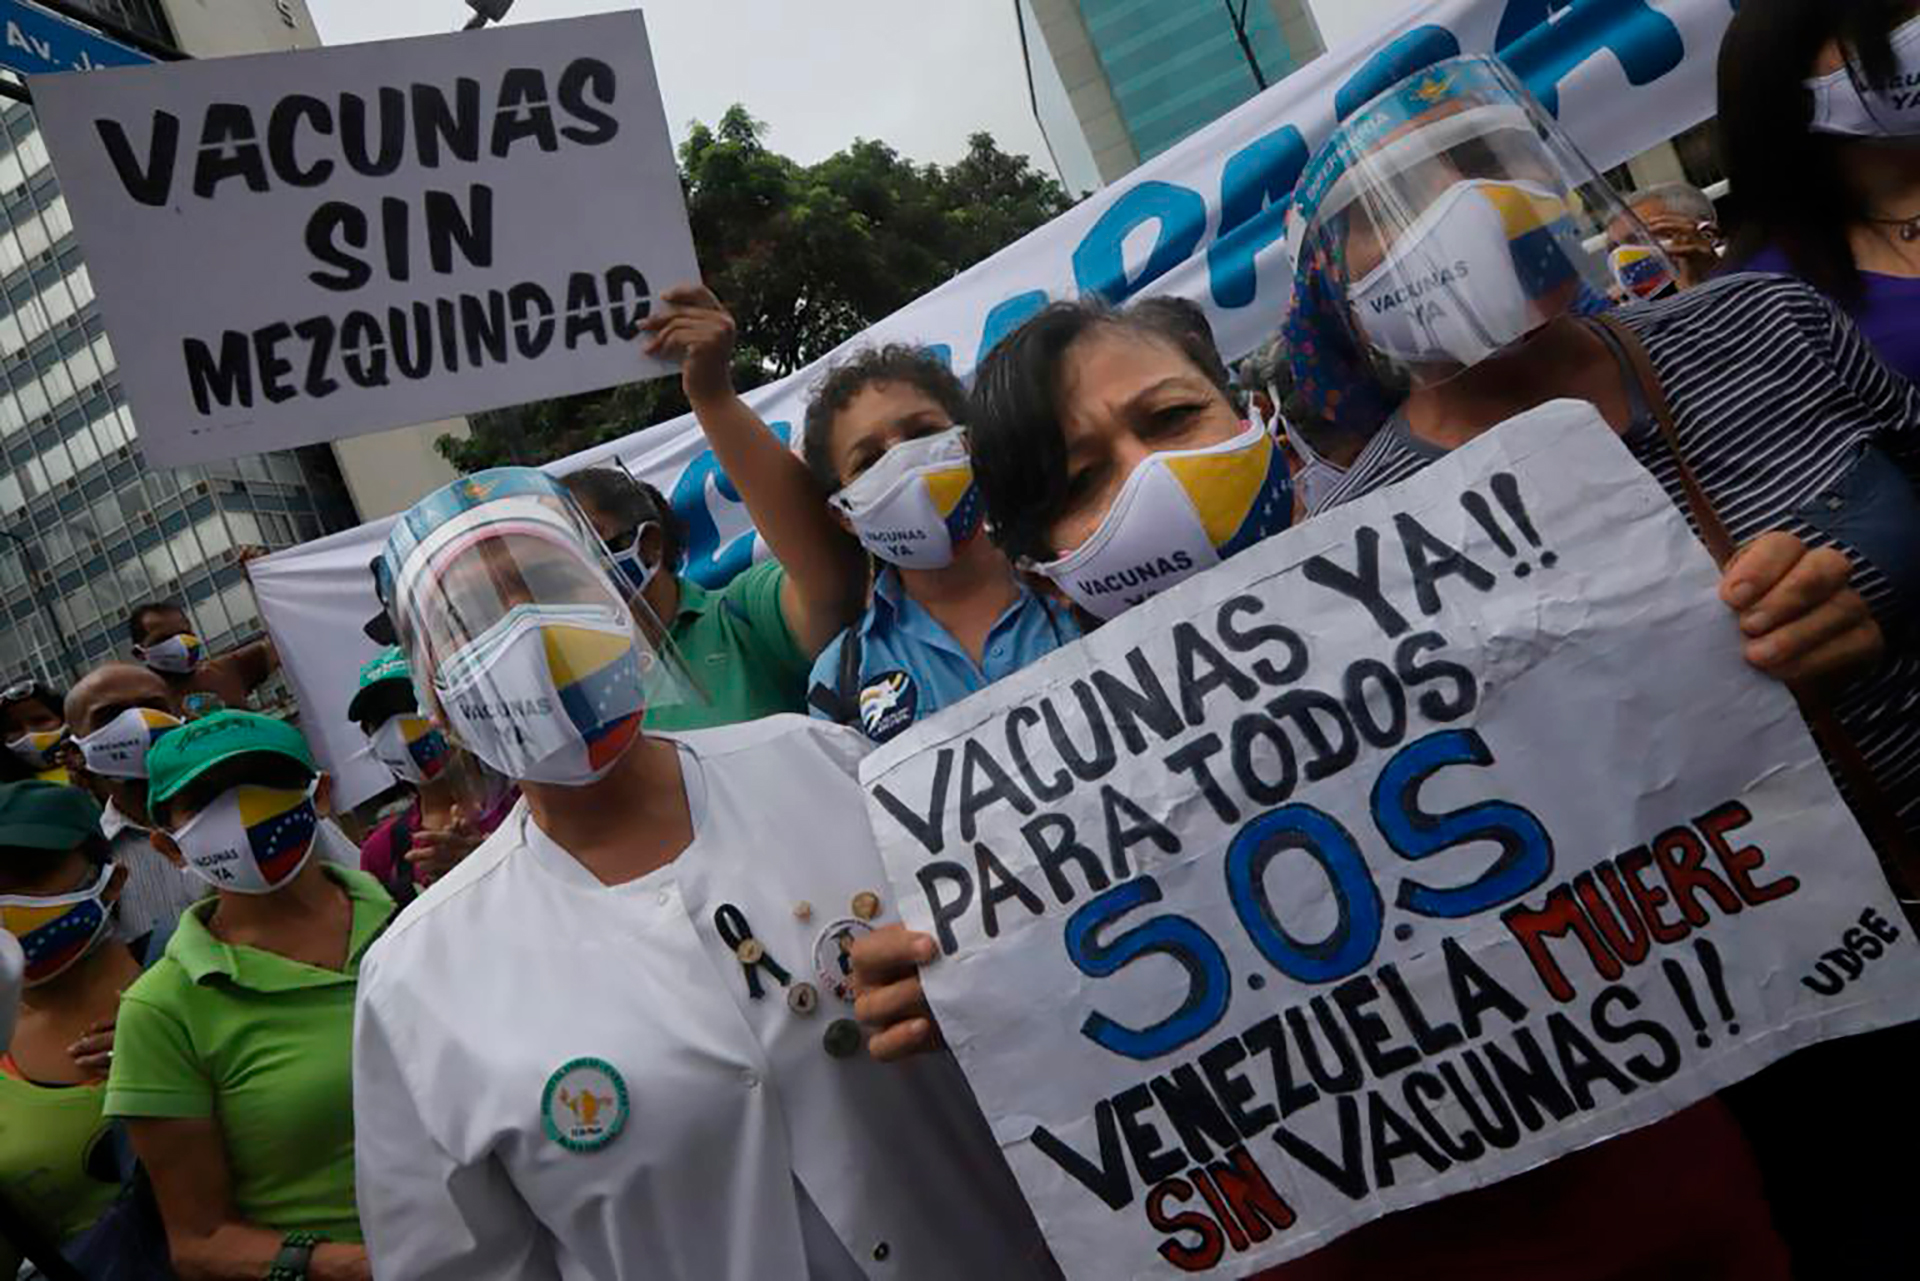 Protesta en Caracas: manifestantes exigieron al régimen venezolano “vacunas para todos” y un “plan nacional transparente” para combatir el coronavirus